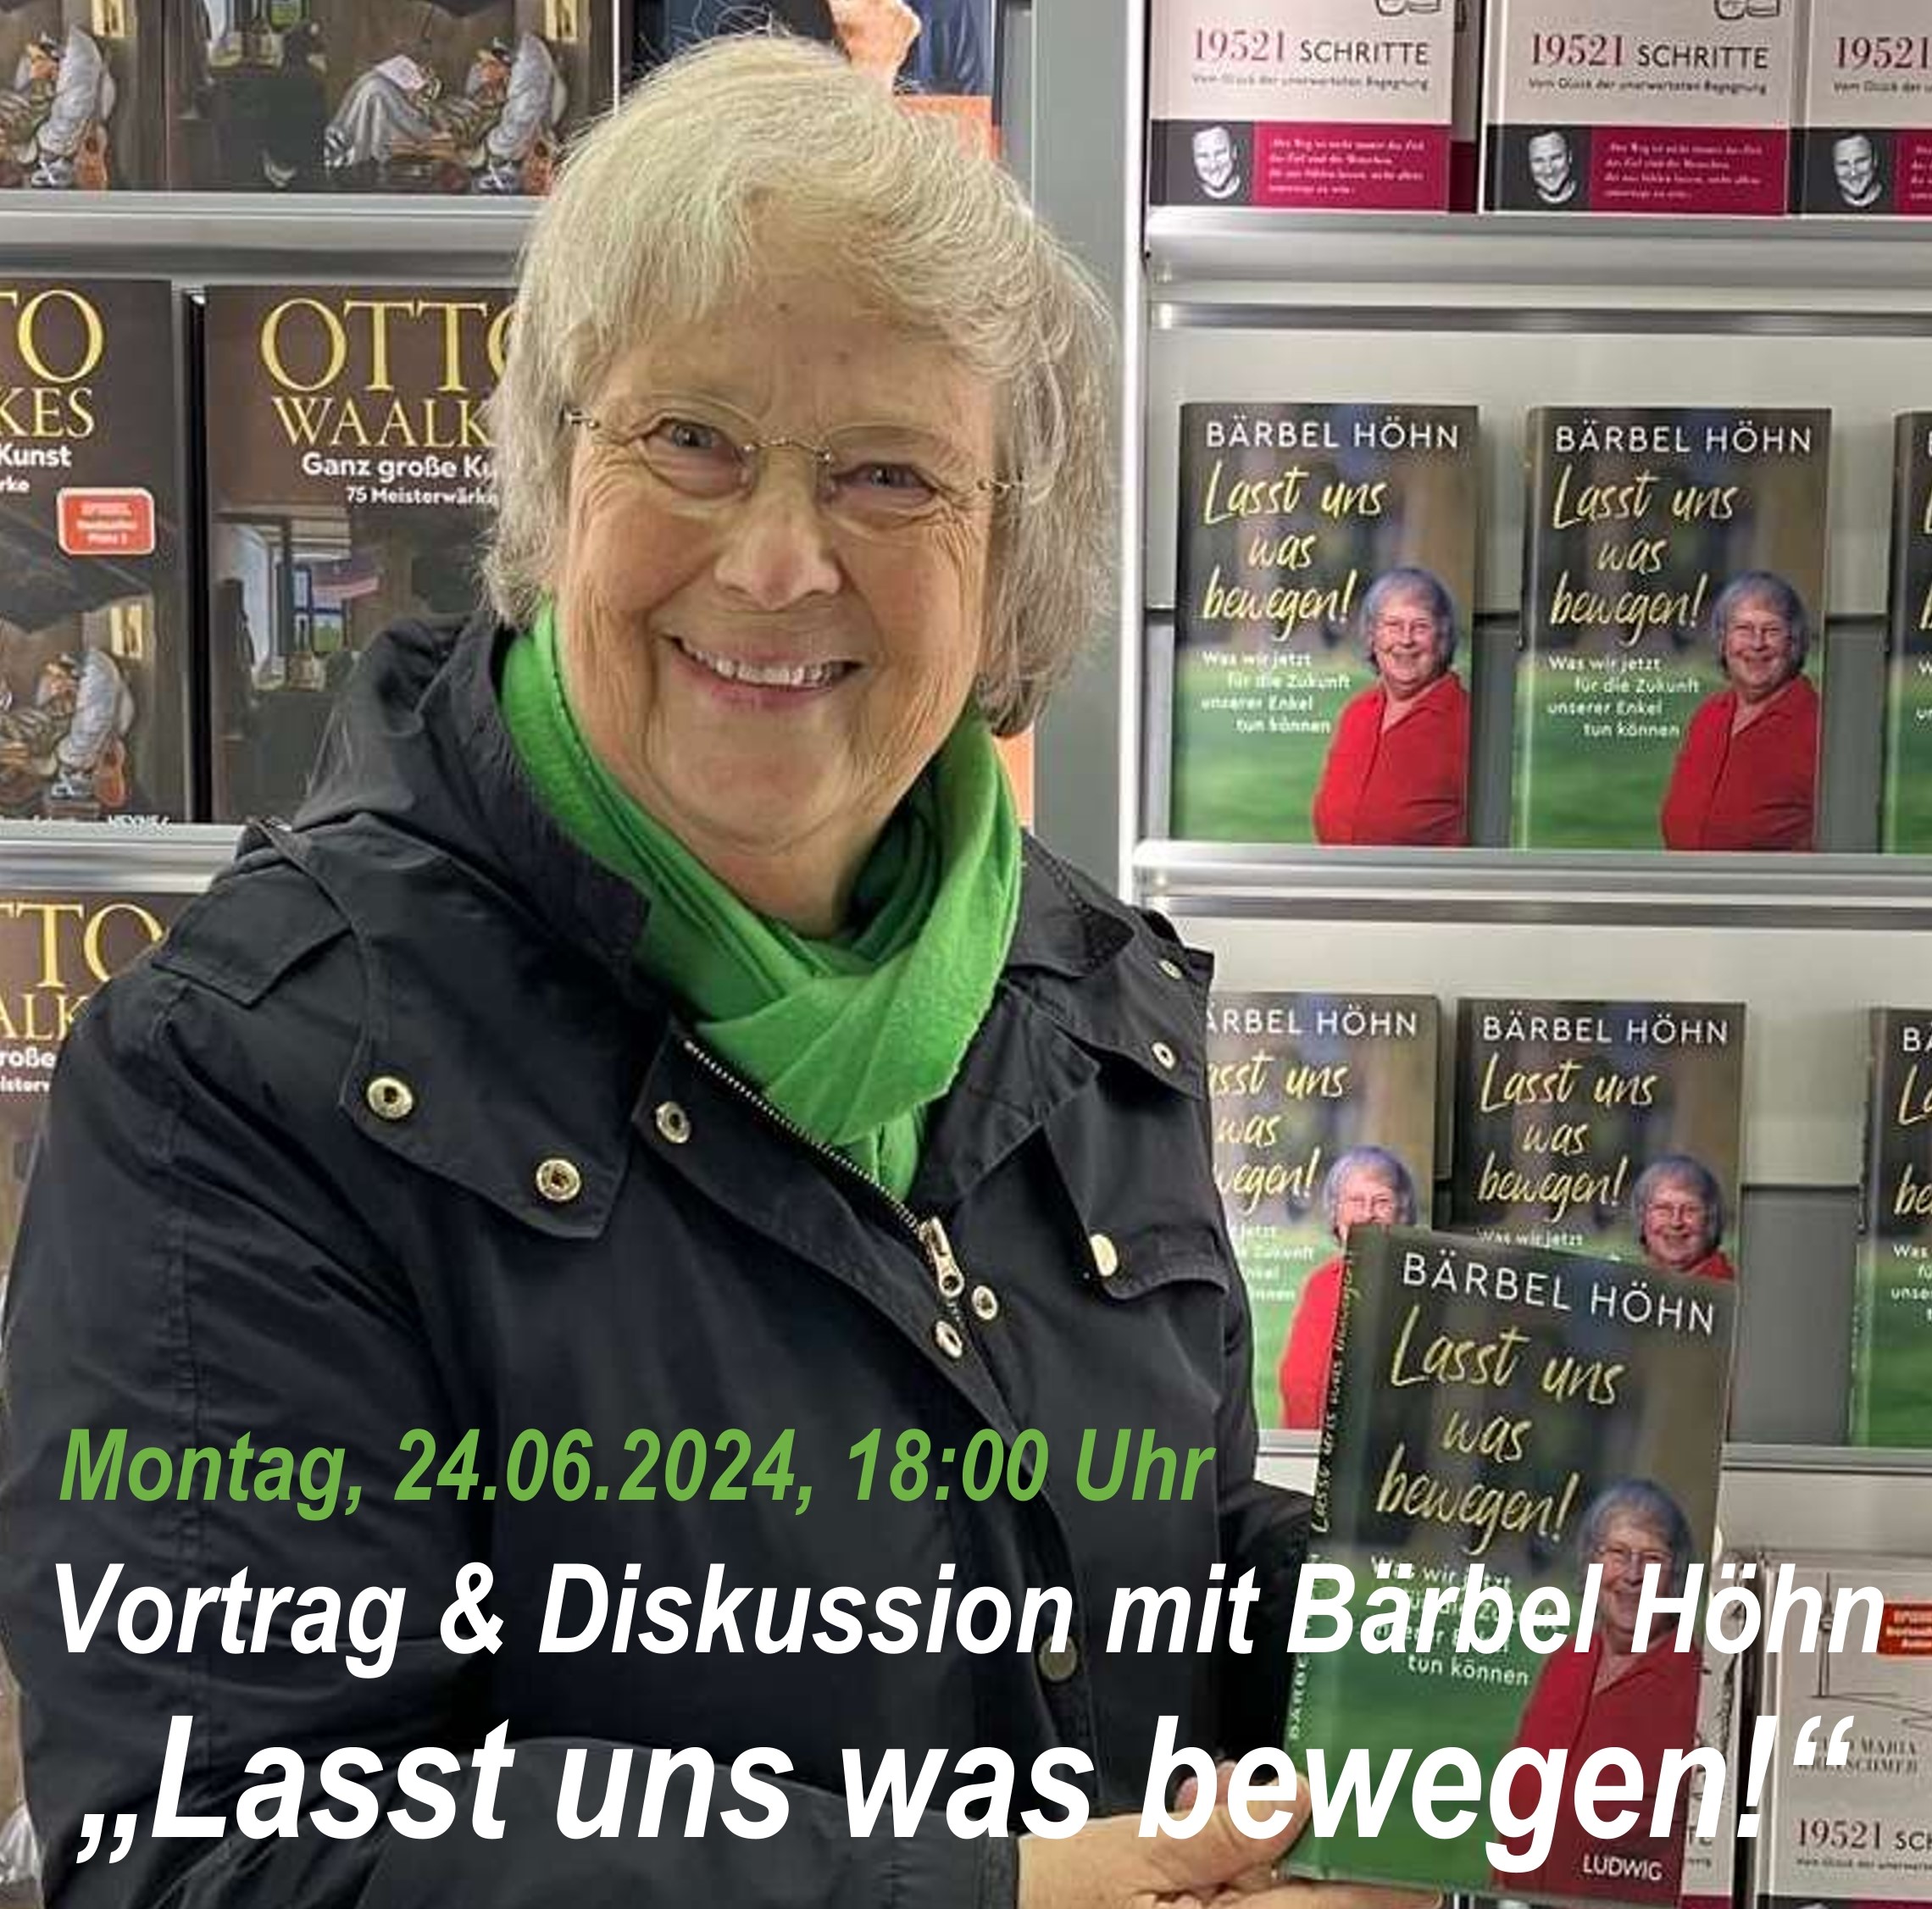 Bärbel Höhn Präsentiert Ihr Buch "Lasst und was bewegen!"